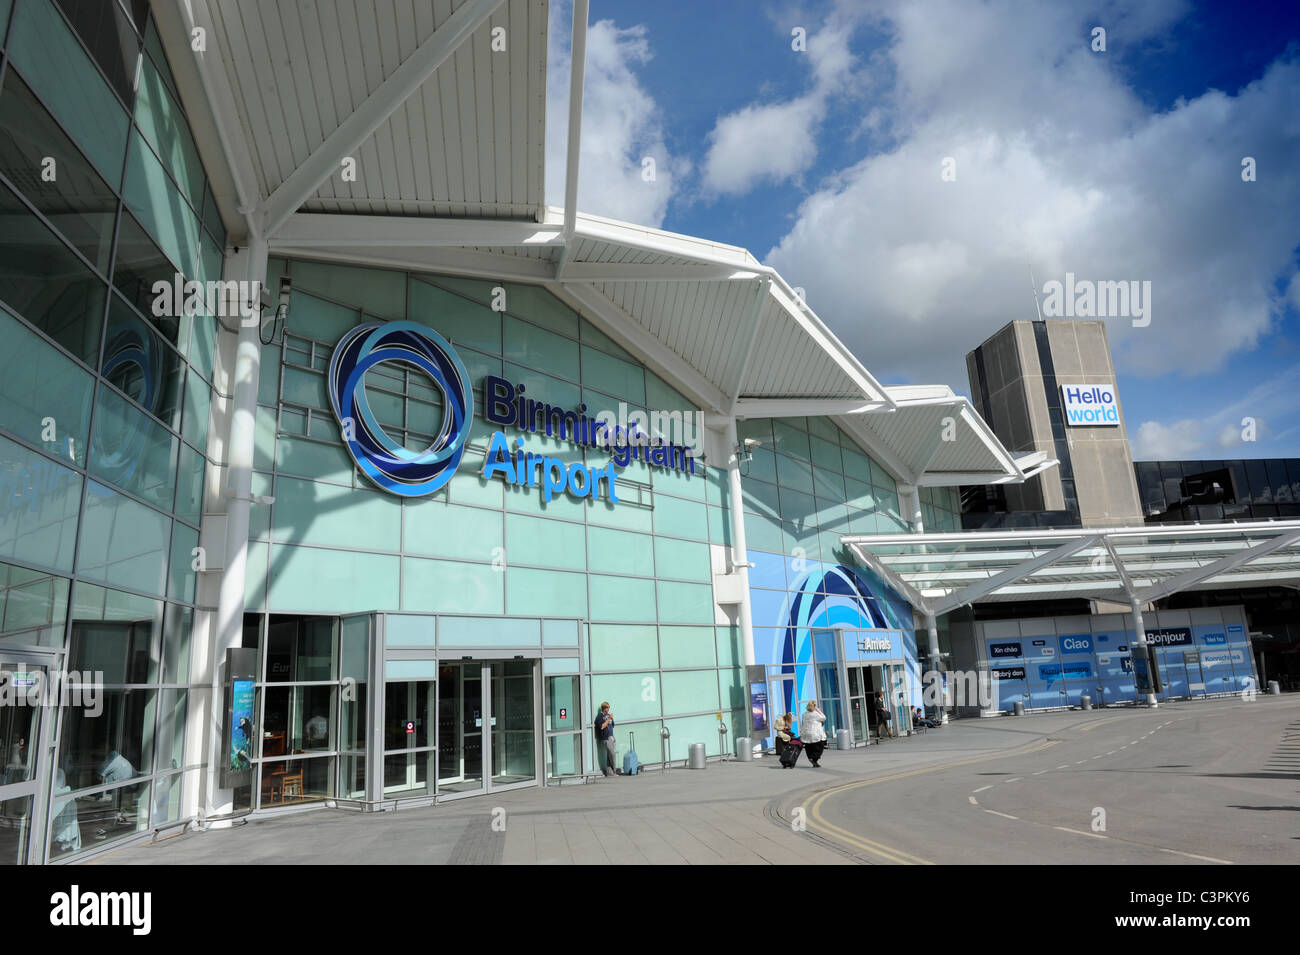 Birmingham Airport terminal new logo sign England Uk Stock Photo